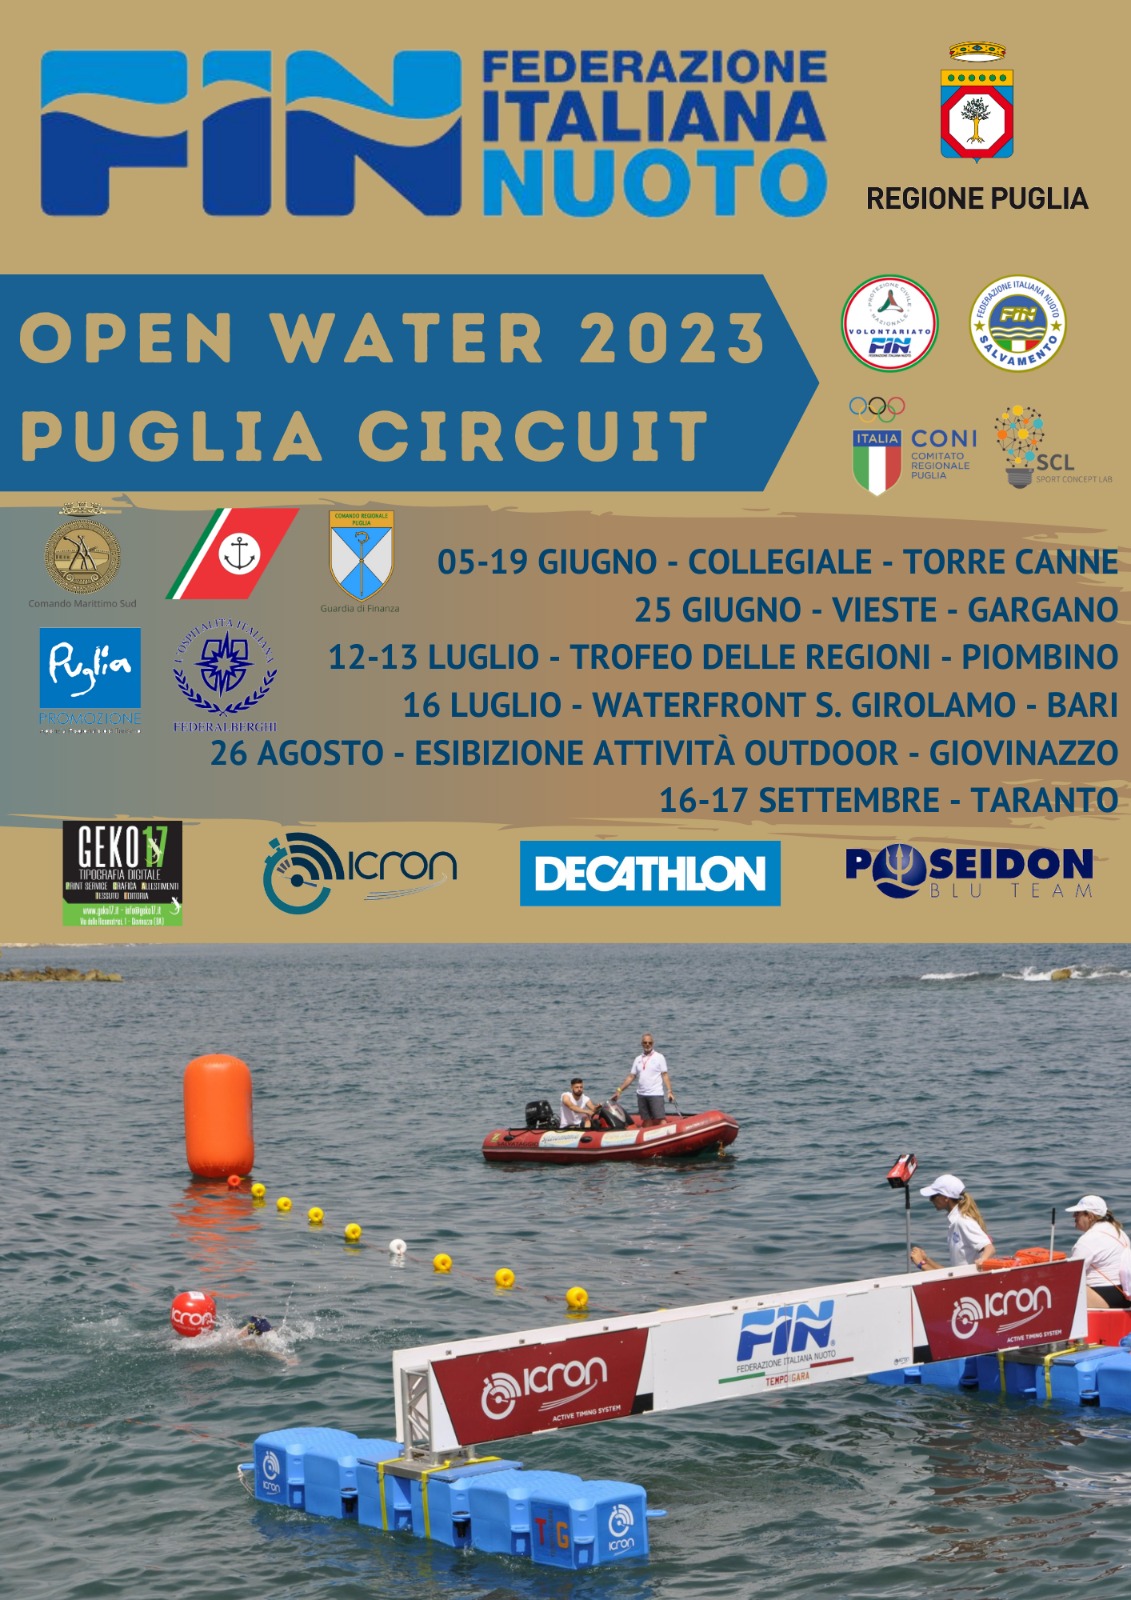 ITALIAN OPEN WATER TOUR, BELLISSIMO EVENTO DI NUOTO IN ACQUE